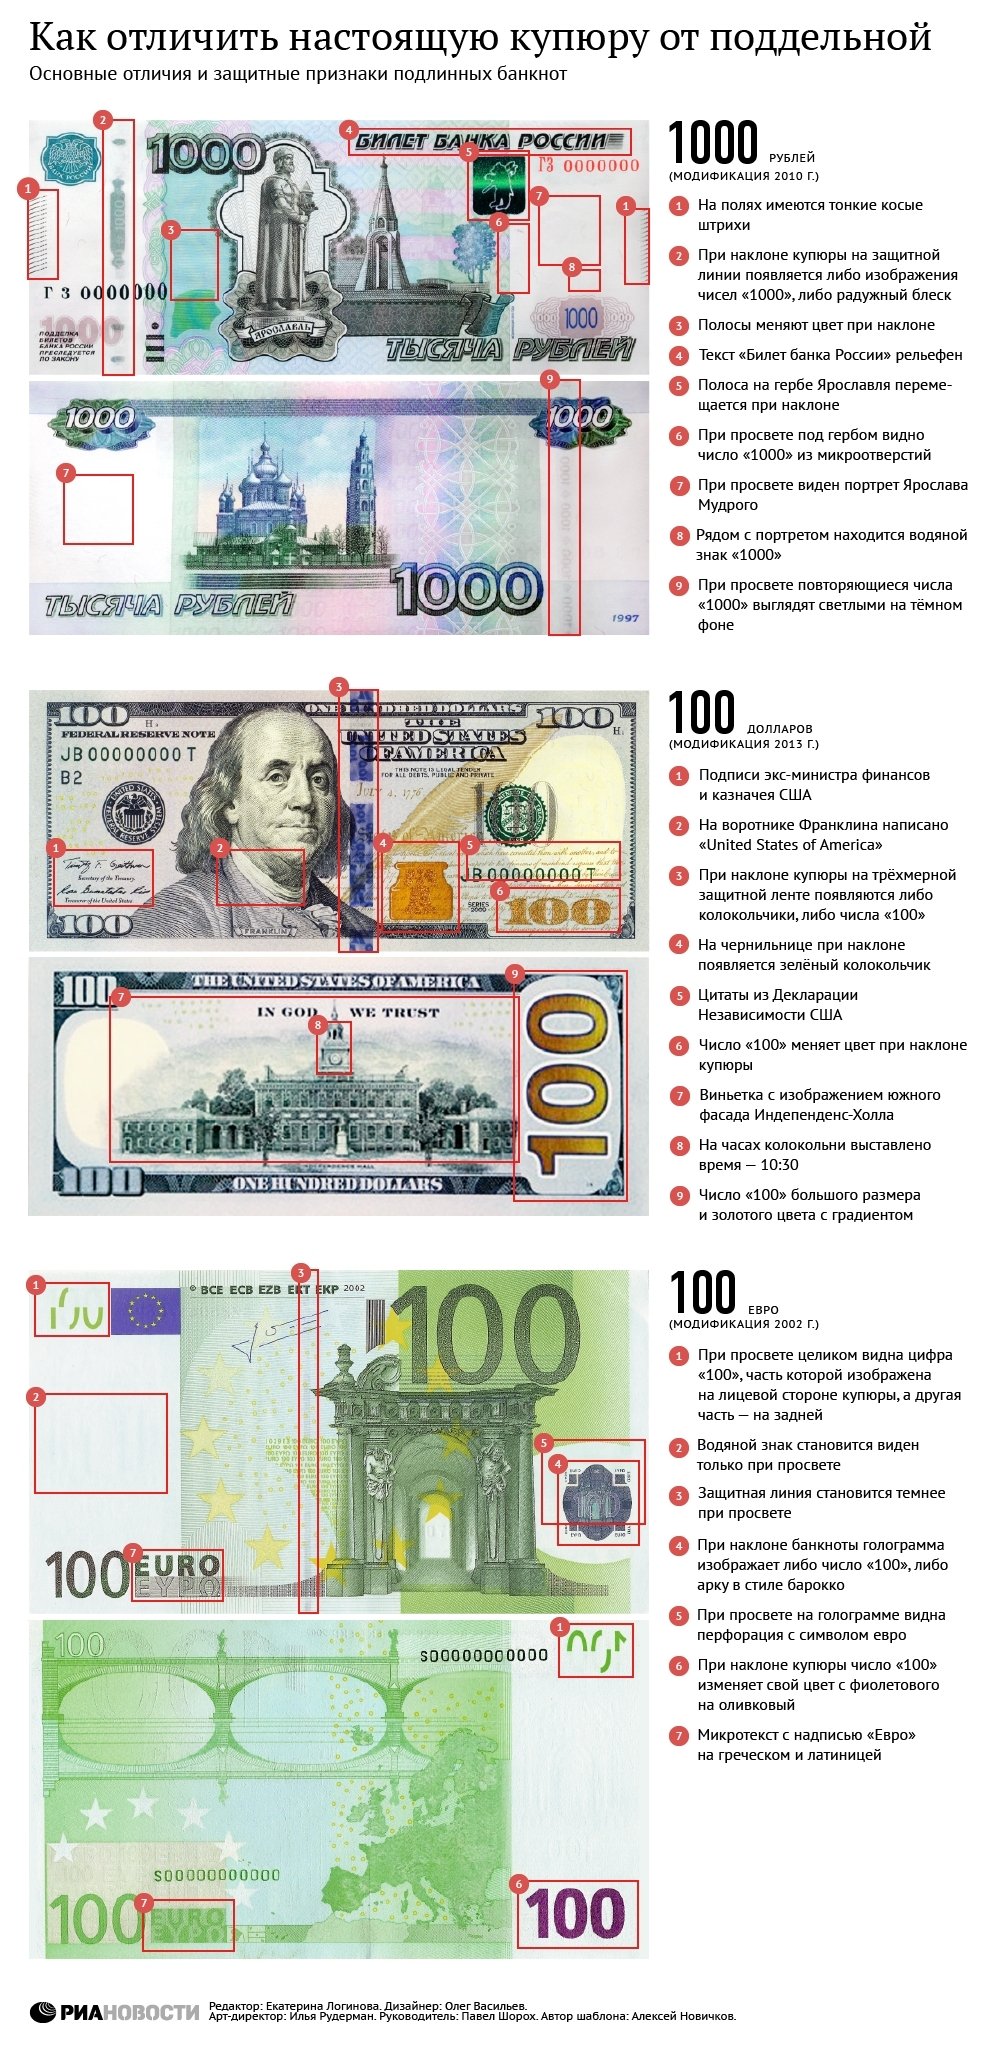 Рубли, доллары, евро. Как отличить настоящую купюру от поддельной. Инфографика